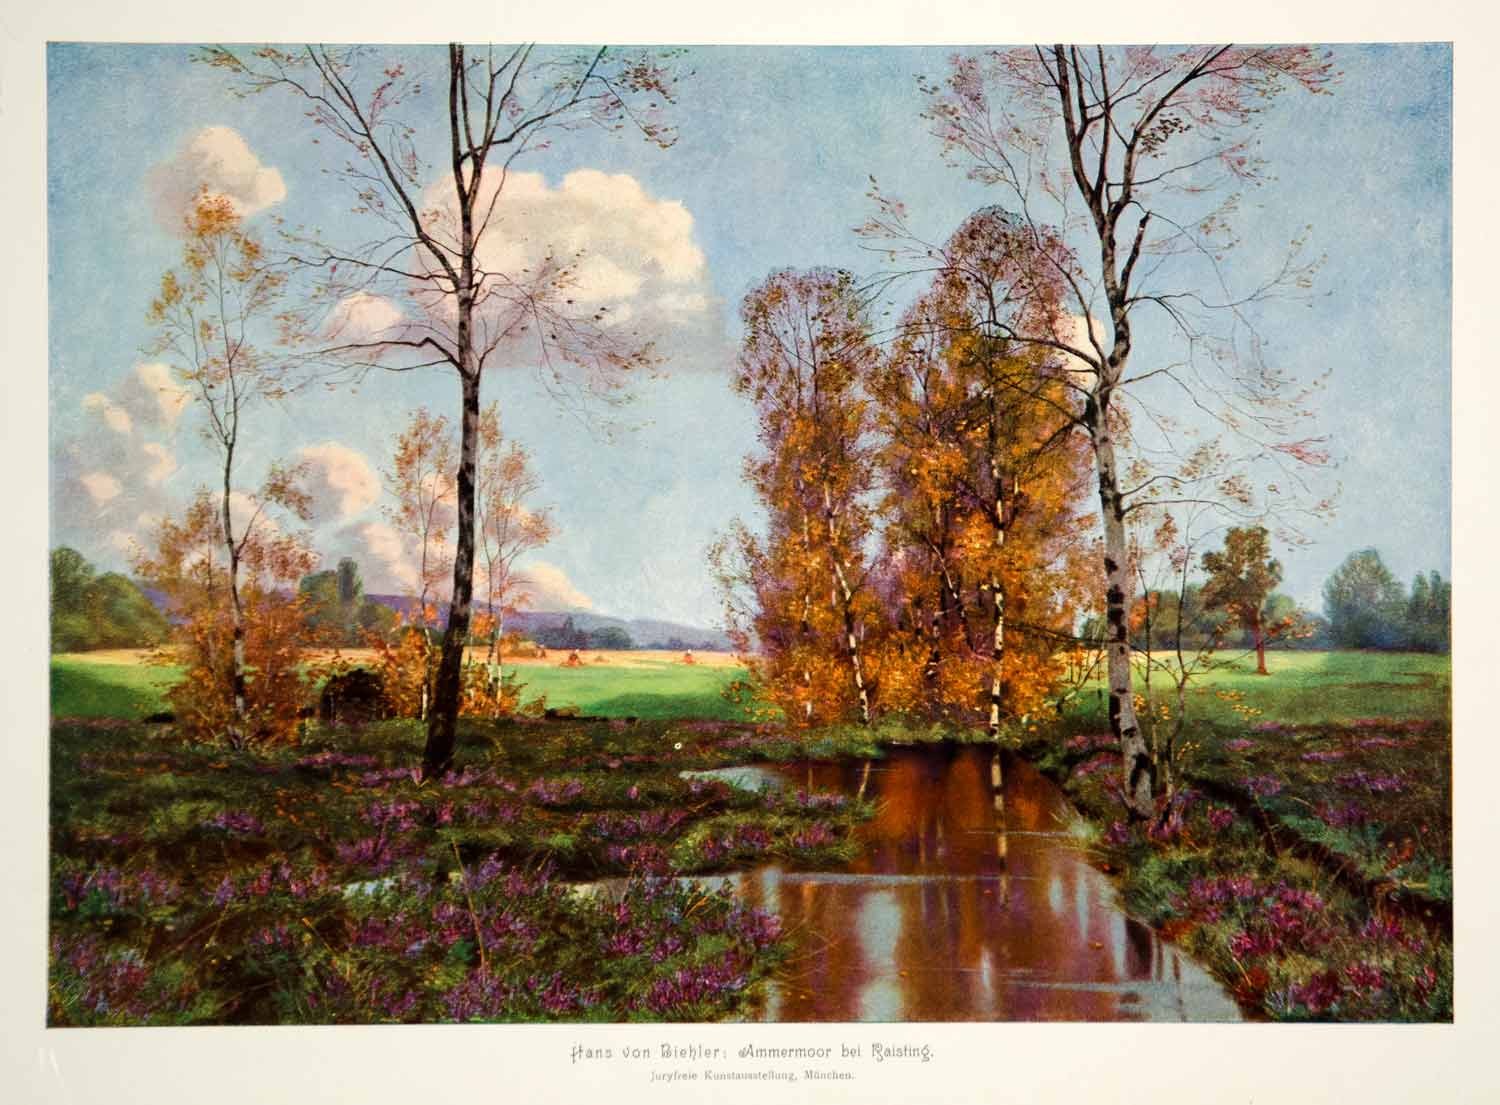 1912 Photolithograph Hans von Biehler Art Raisting Bavaria Germany Landscape MK4